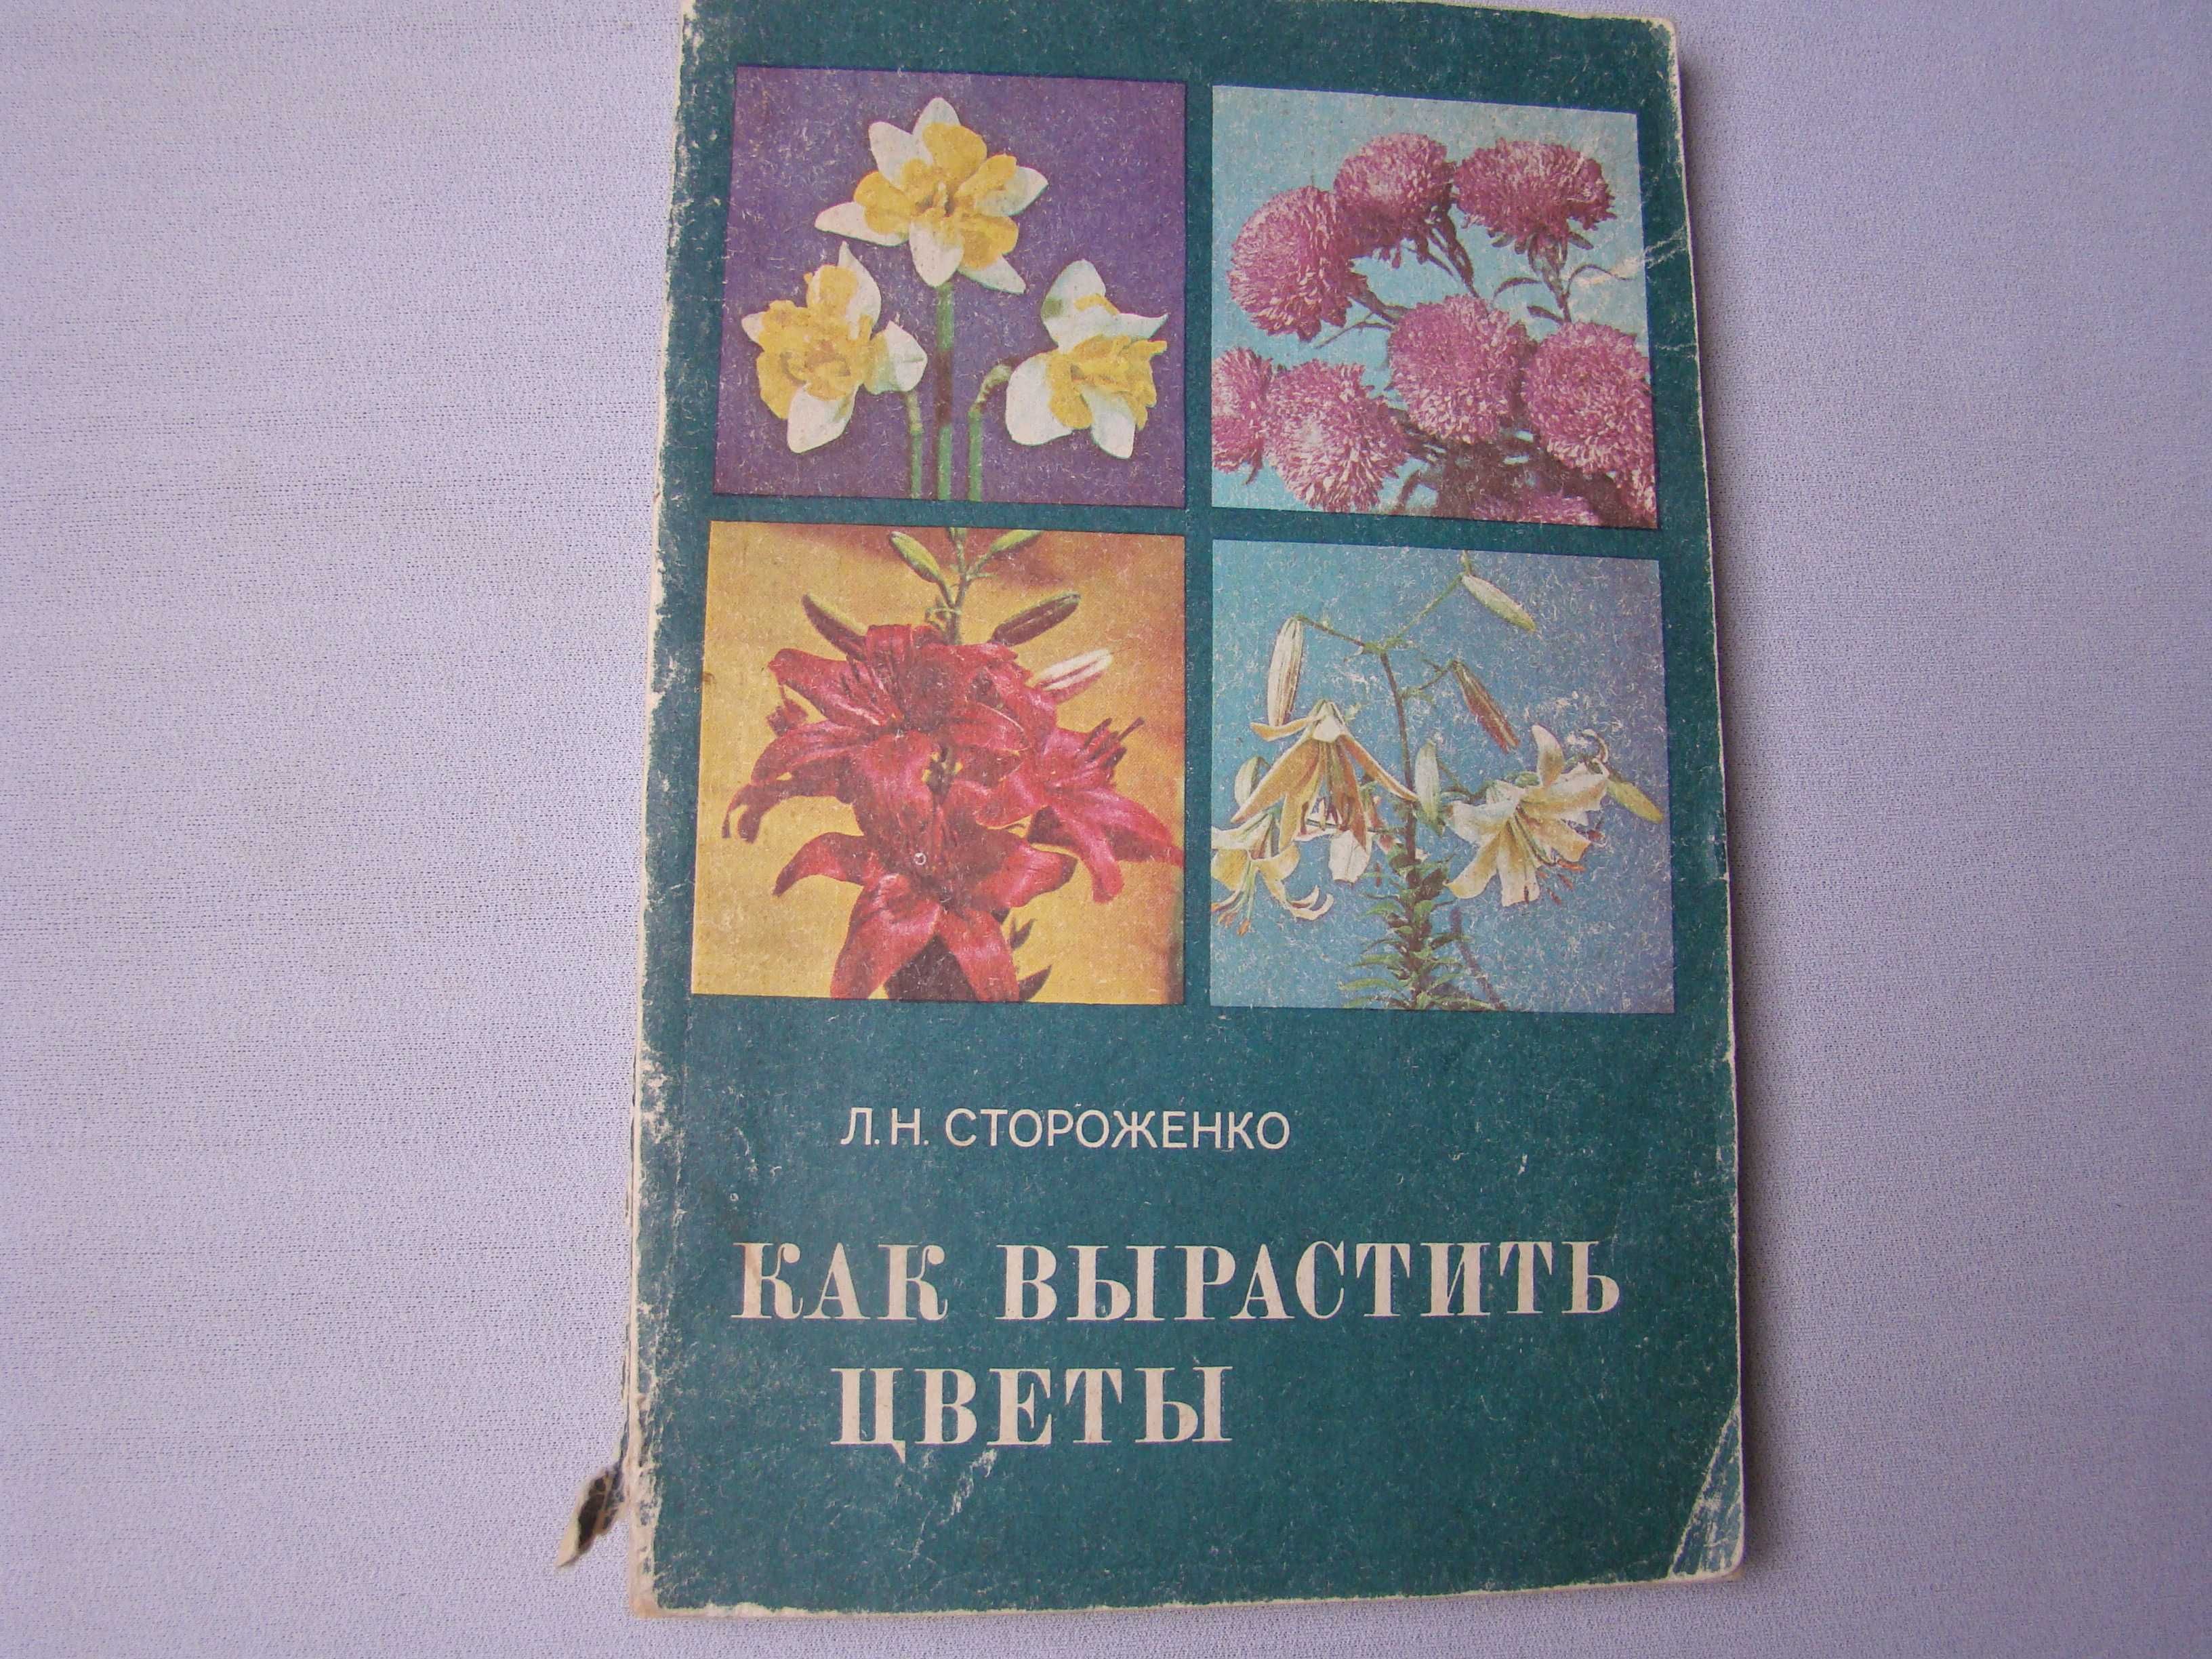 Книга "Как вырастить цветы "